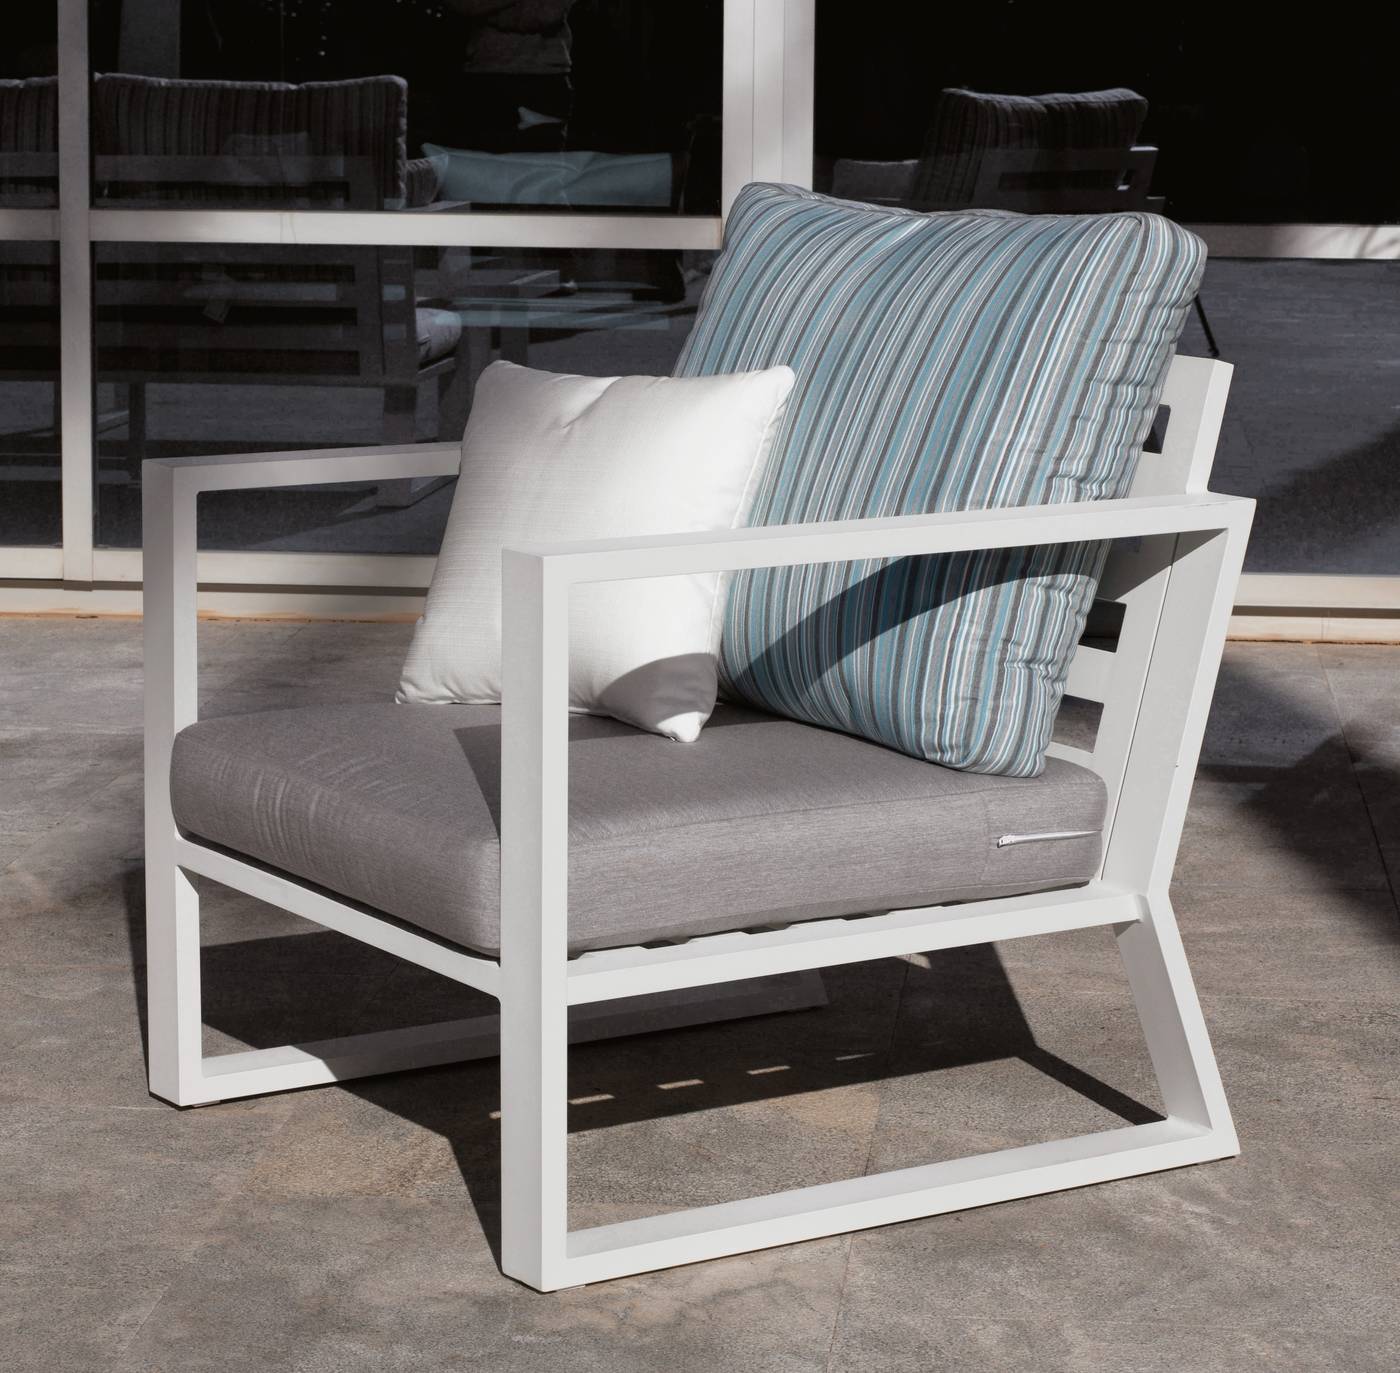 Set Aluminio Bolonia-7 - 1 sofá de 2 plazas + 2 sillones + 1 mesa de centro + cojines.